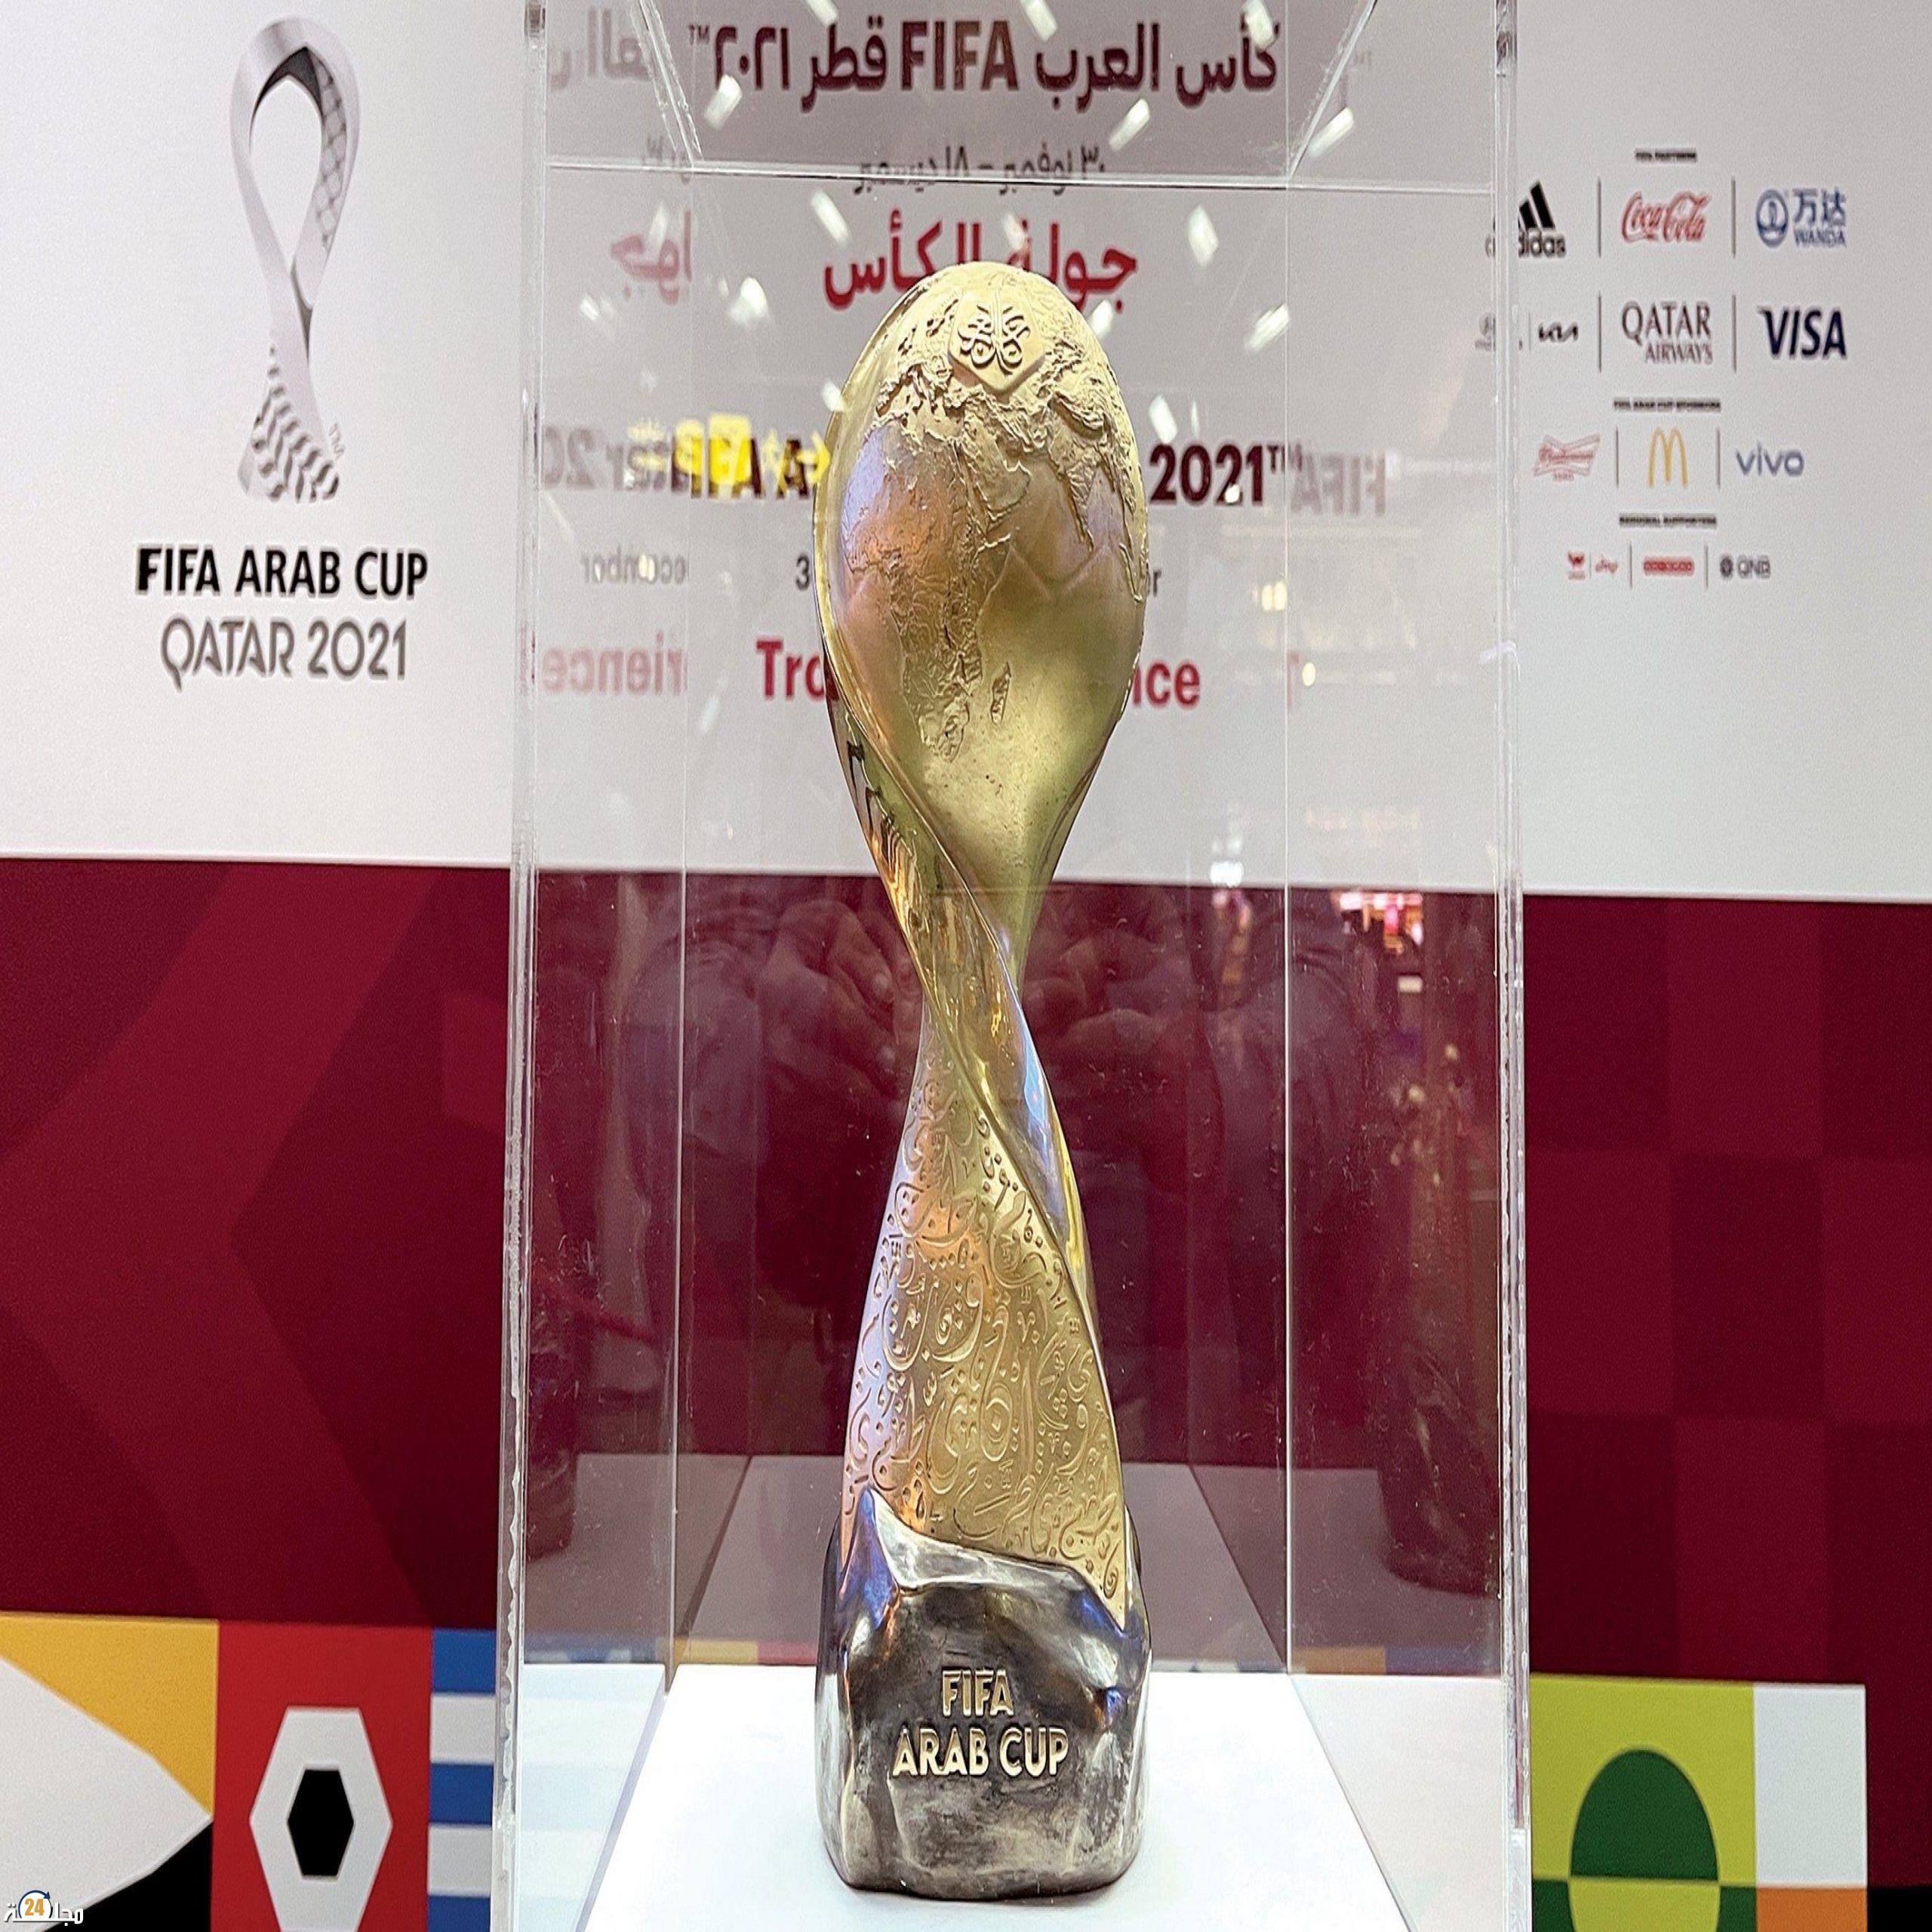 الدوحة .. مجسم ” كأس مونديال العرب ” يبرز خريطة العالم العربي وثقافته ودلالاتها